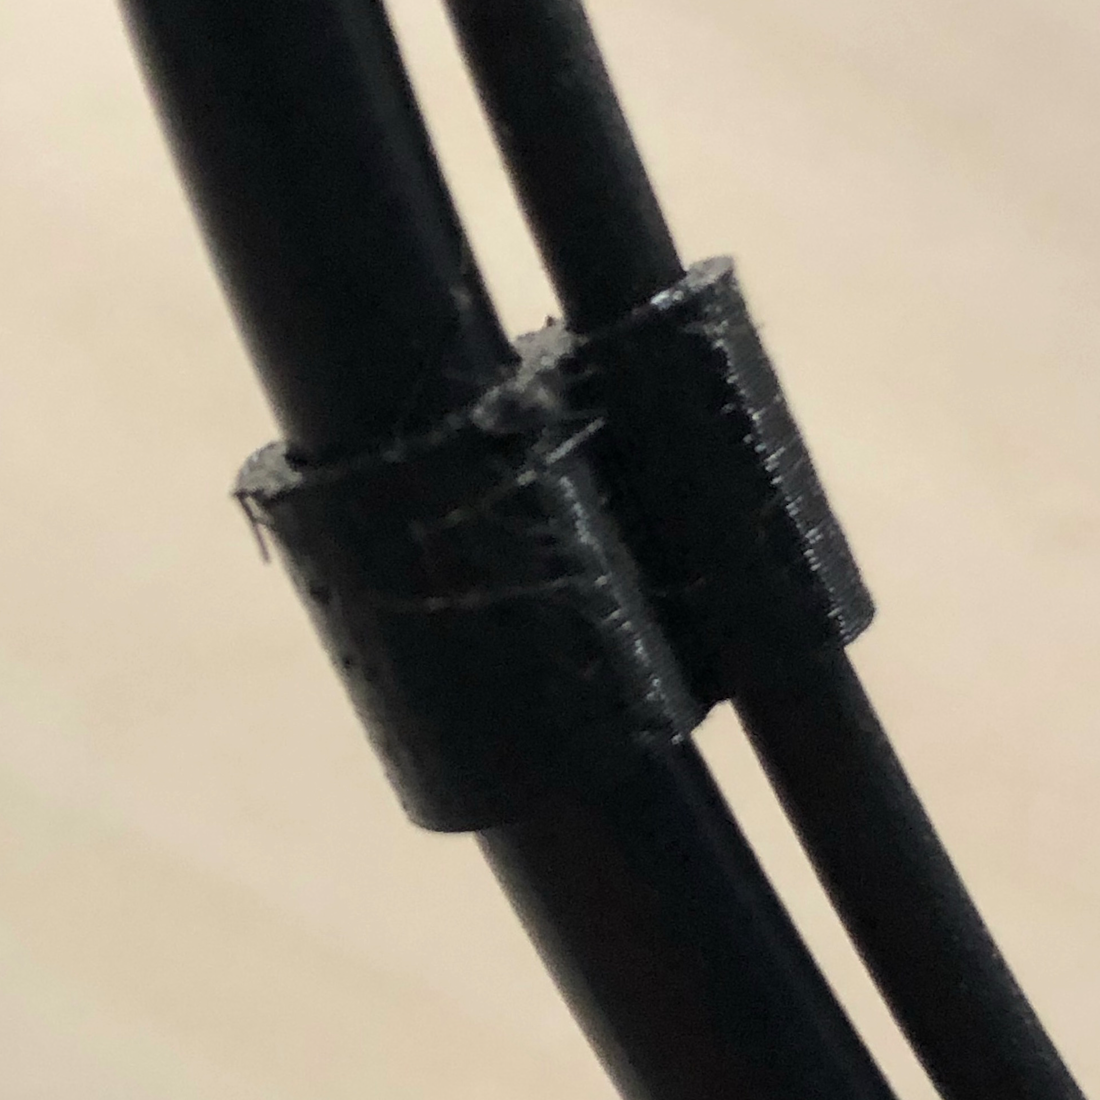 Shimano Di2 cable clip